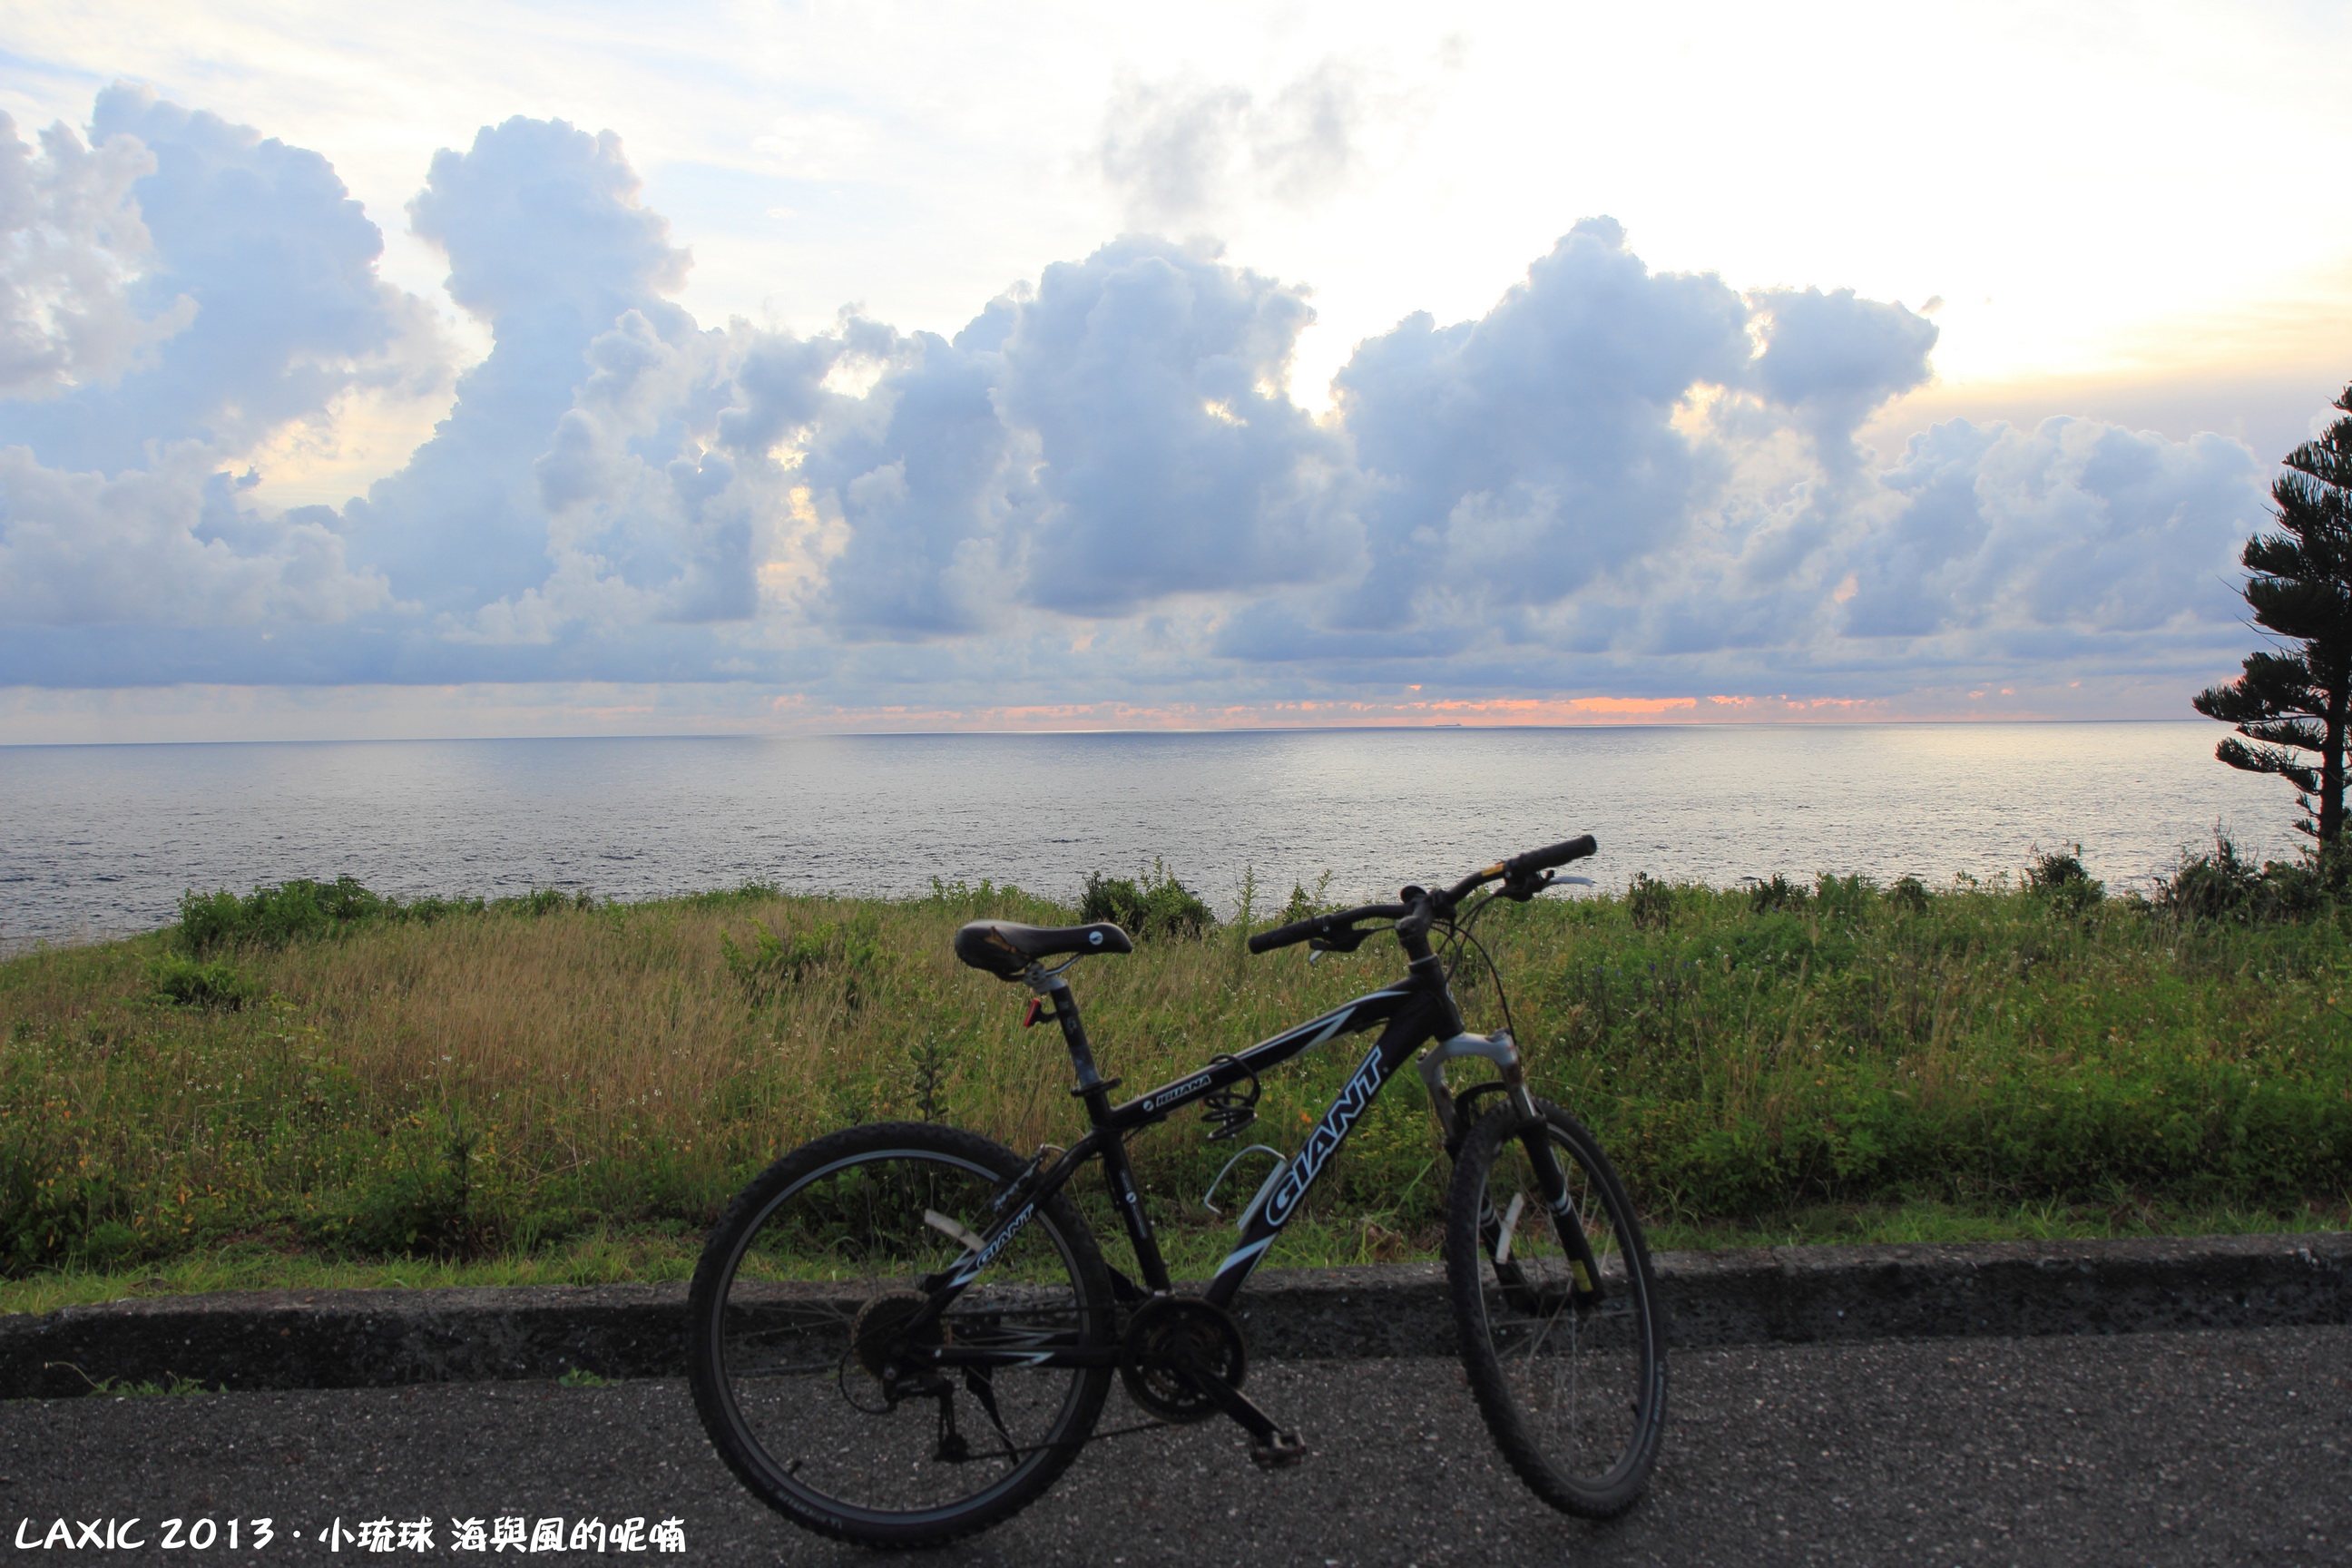 2013.07 小琉球 海與風的呢喃